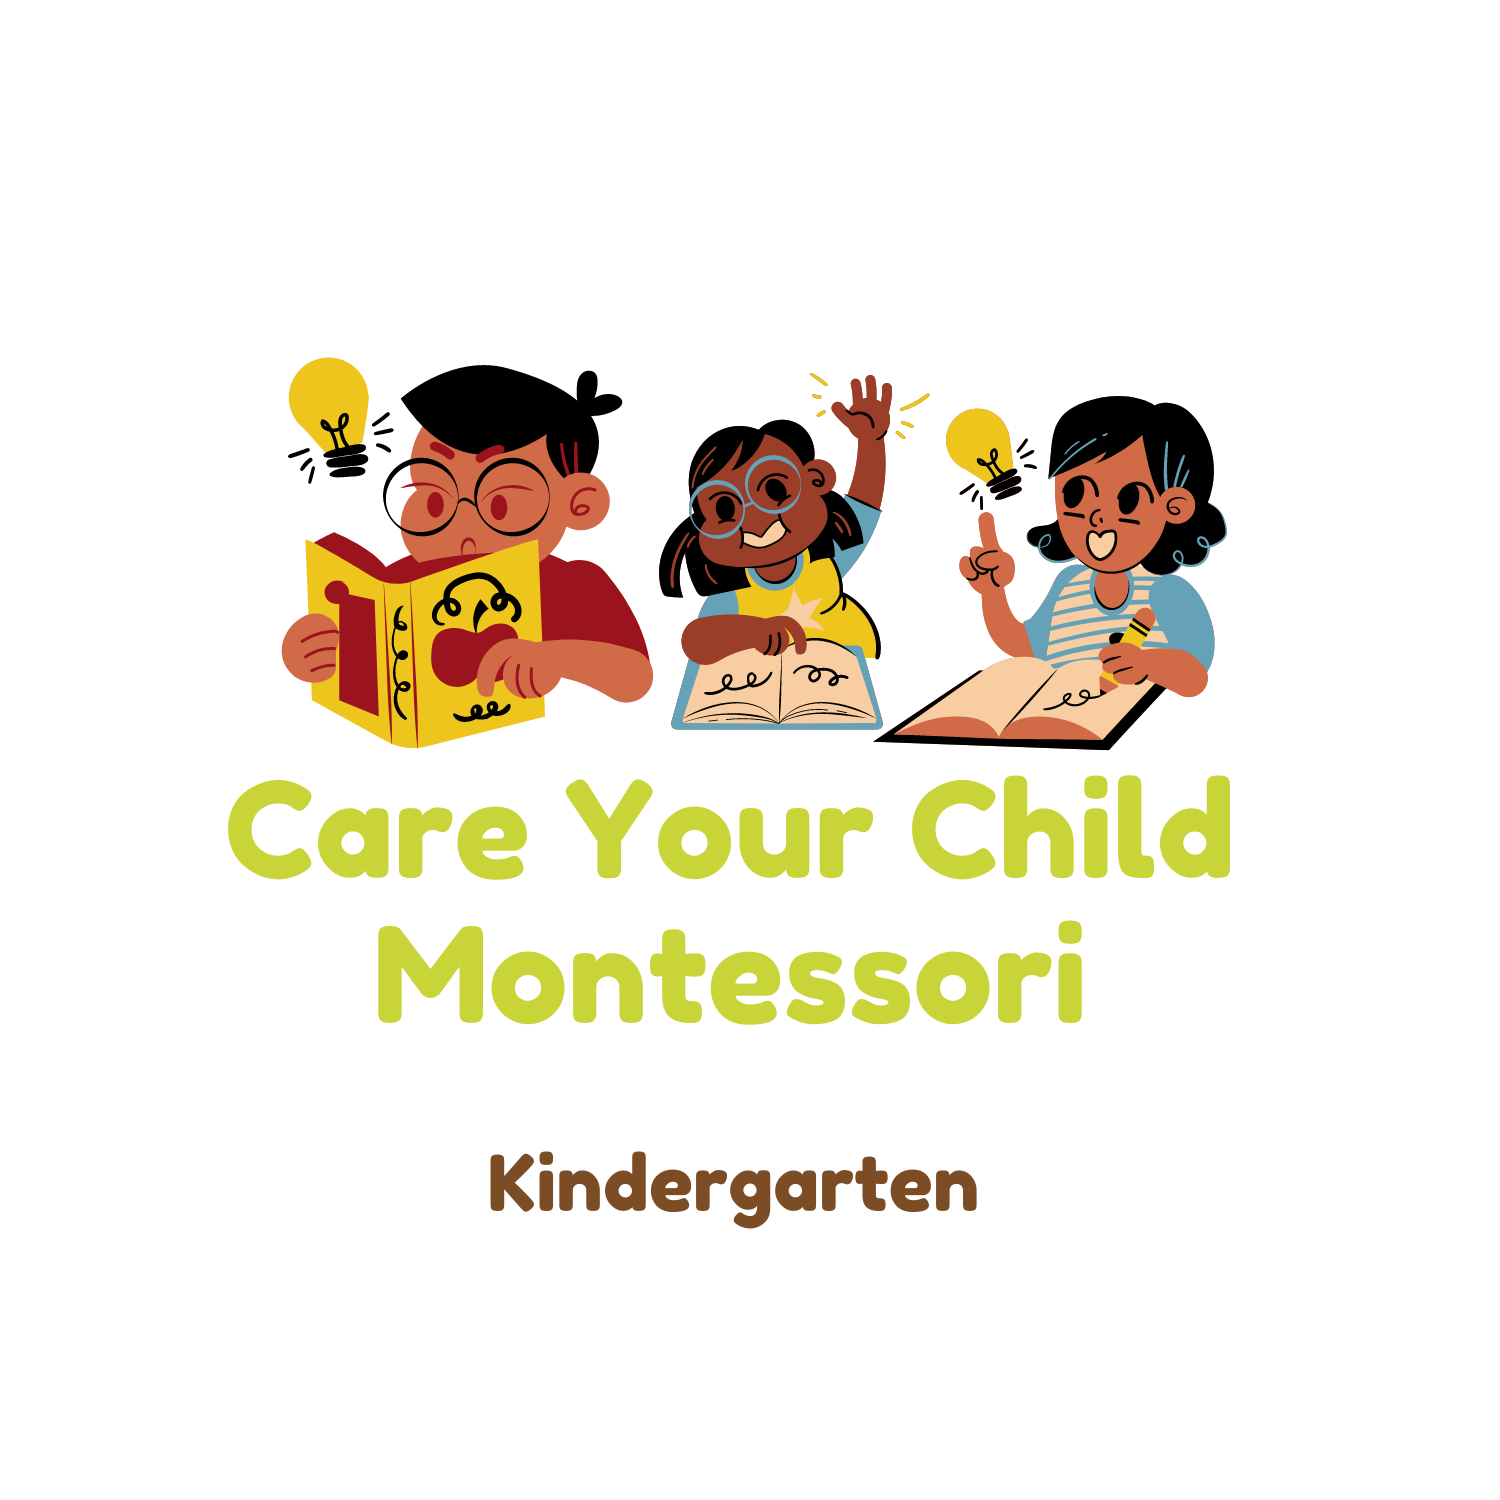 Care Your Child Montessori